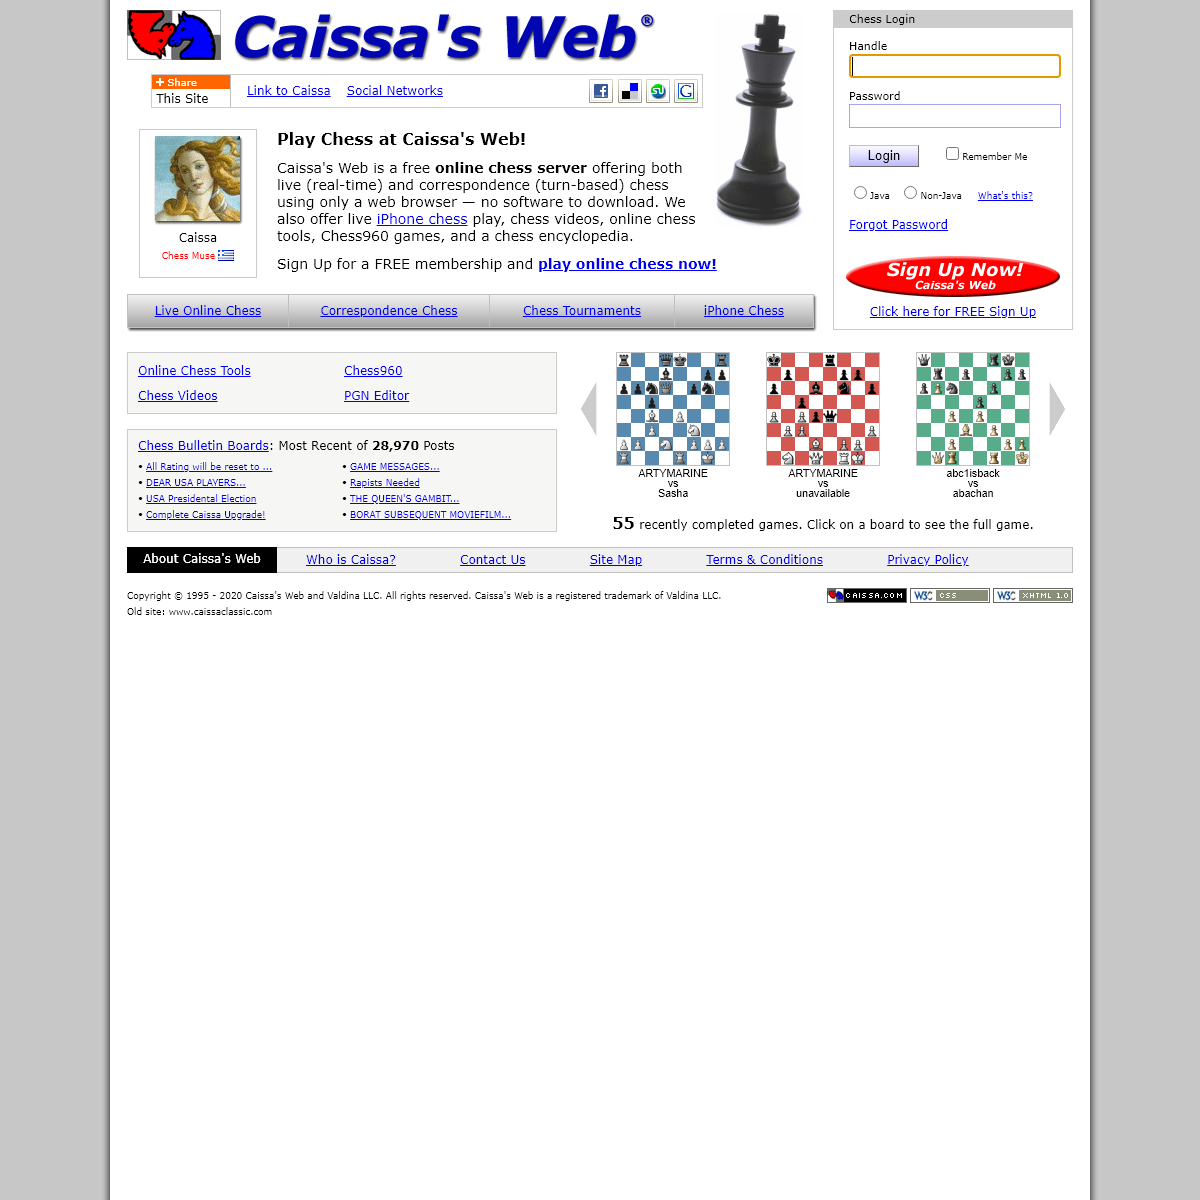 A complete backup of caissa.com